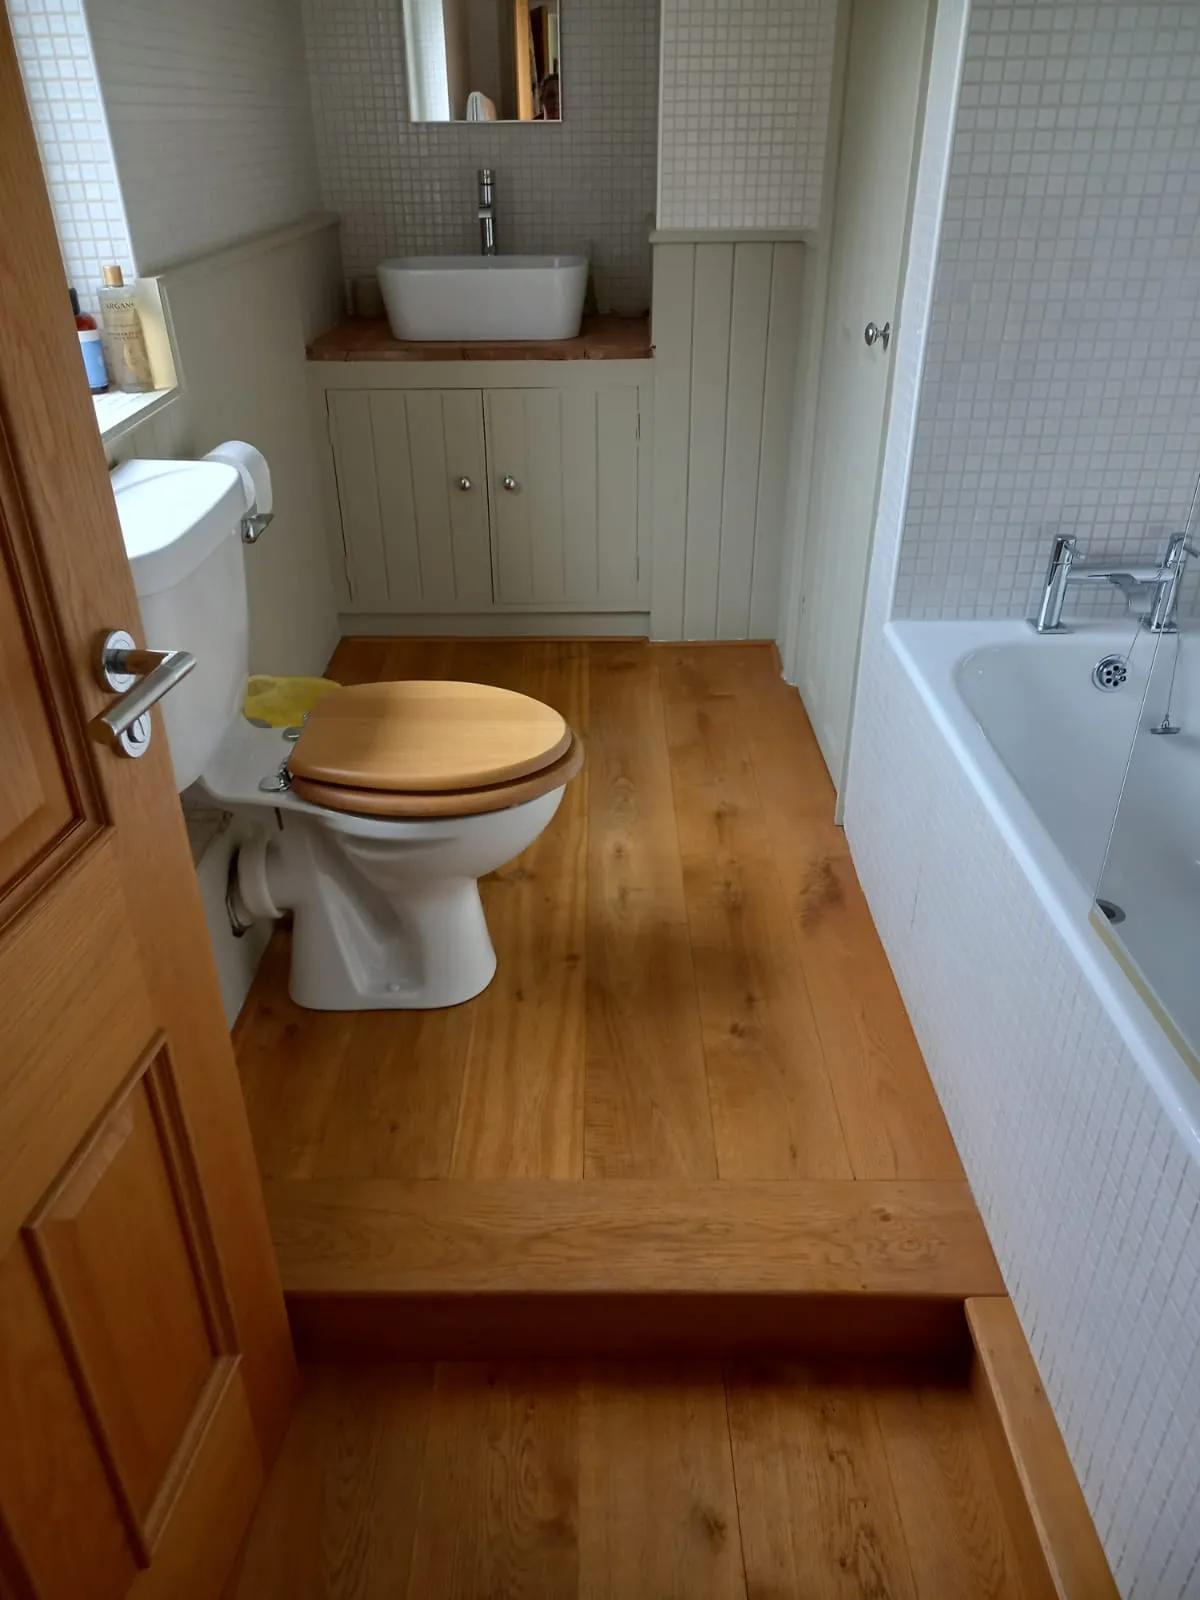 Bathroom with wooden floor freshly cleaned